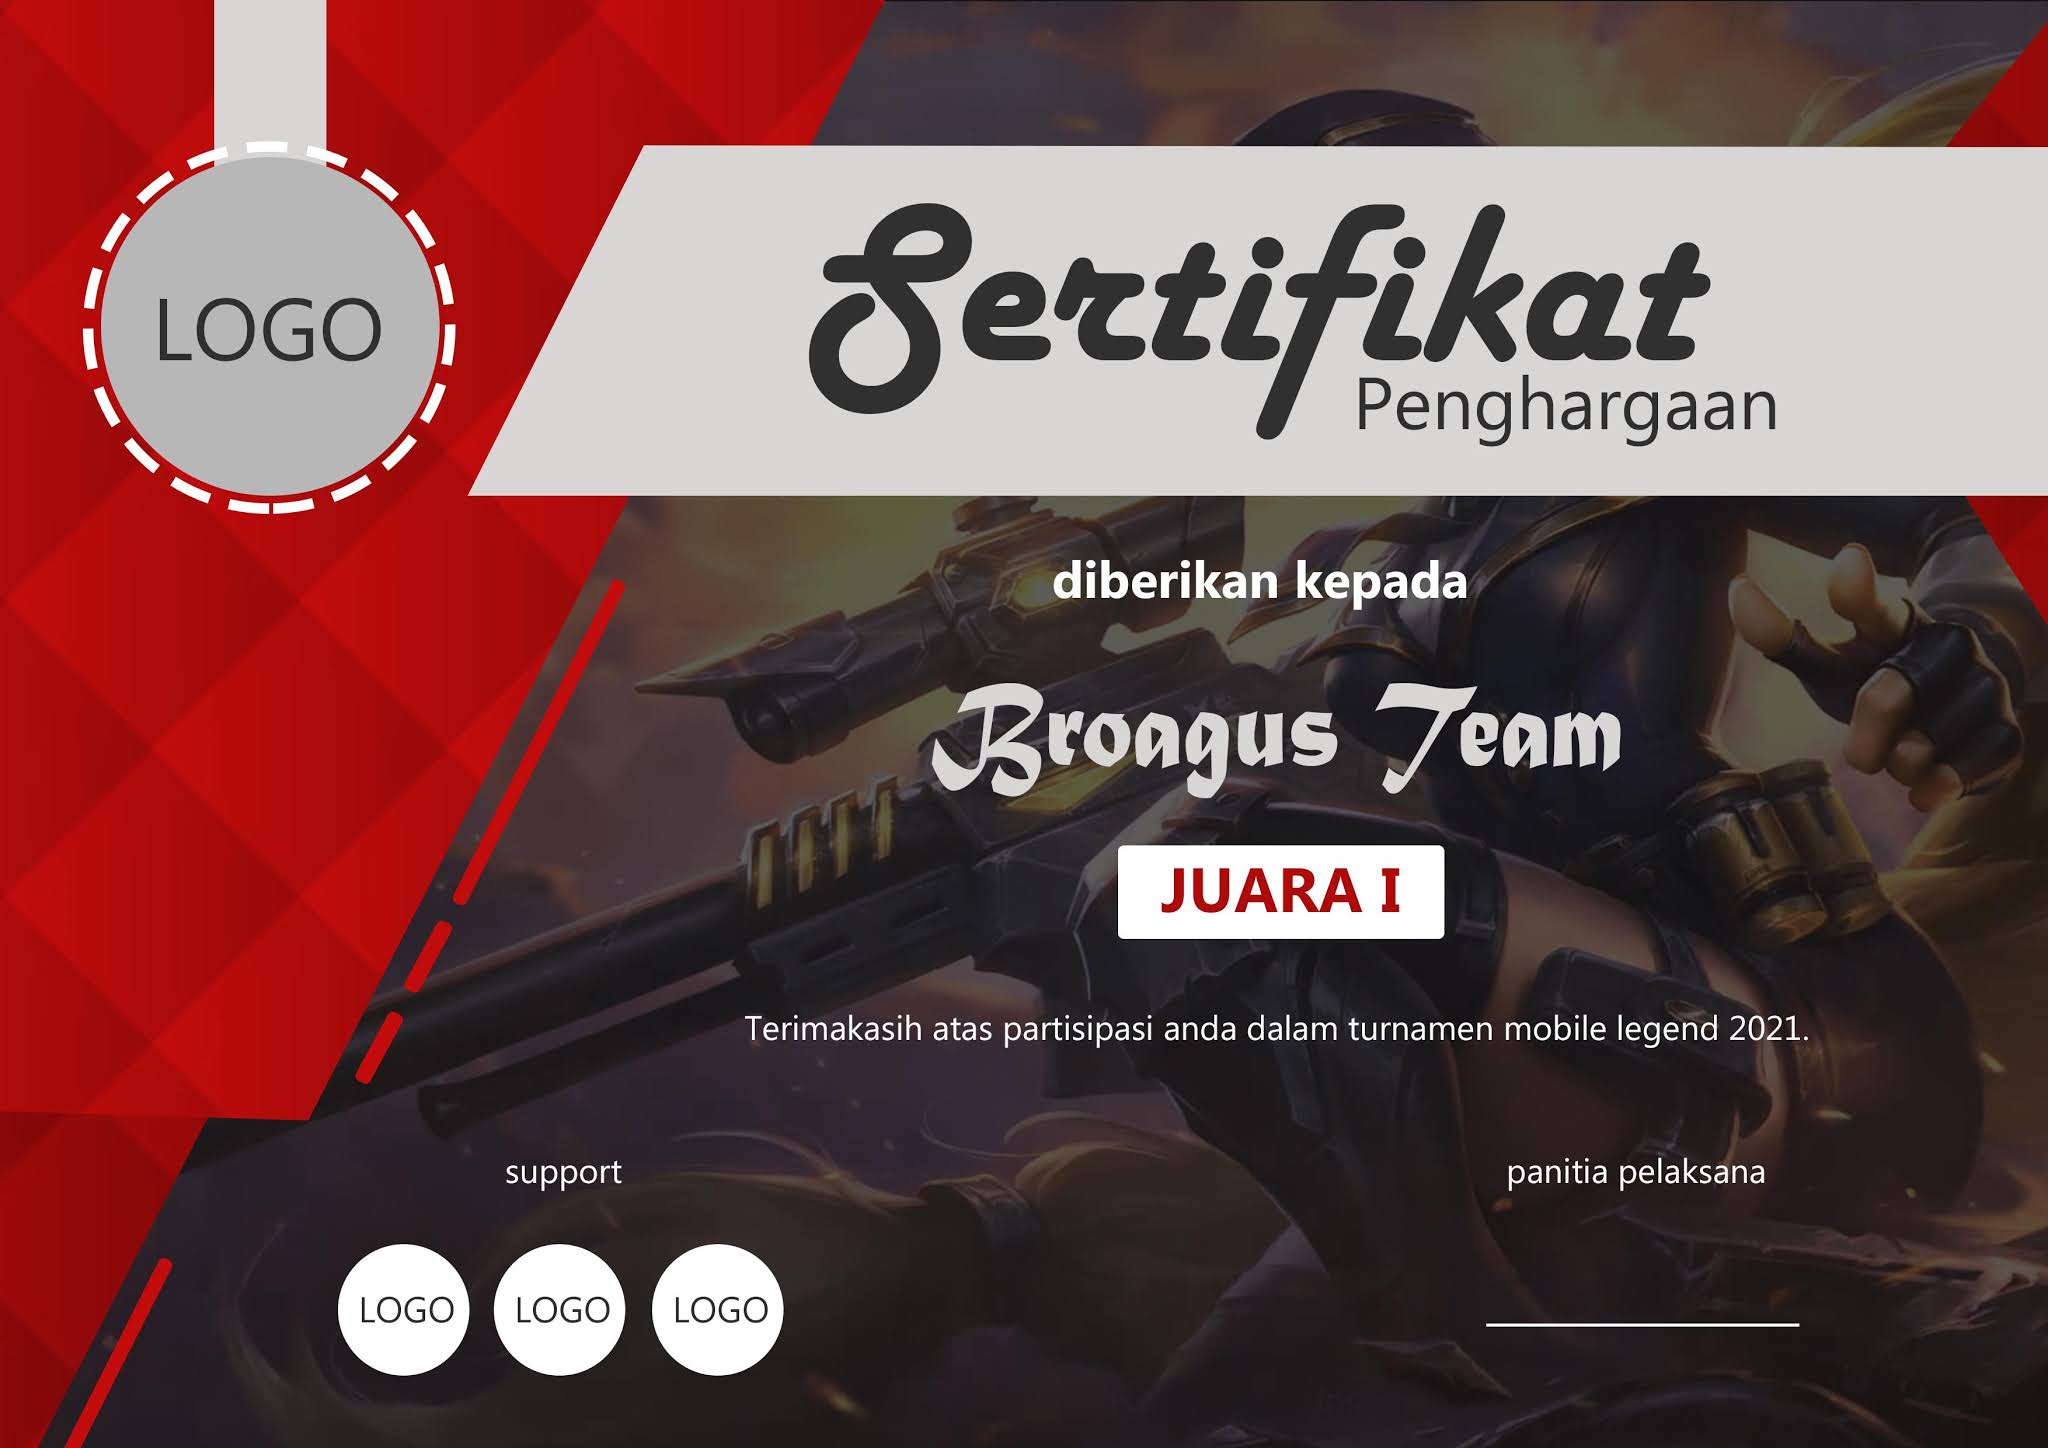 Download Mentahan Sertifikat Turnamen Mobile Legend Gratis Versi 2 PSD BROAGUS